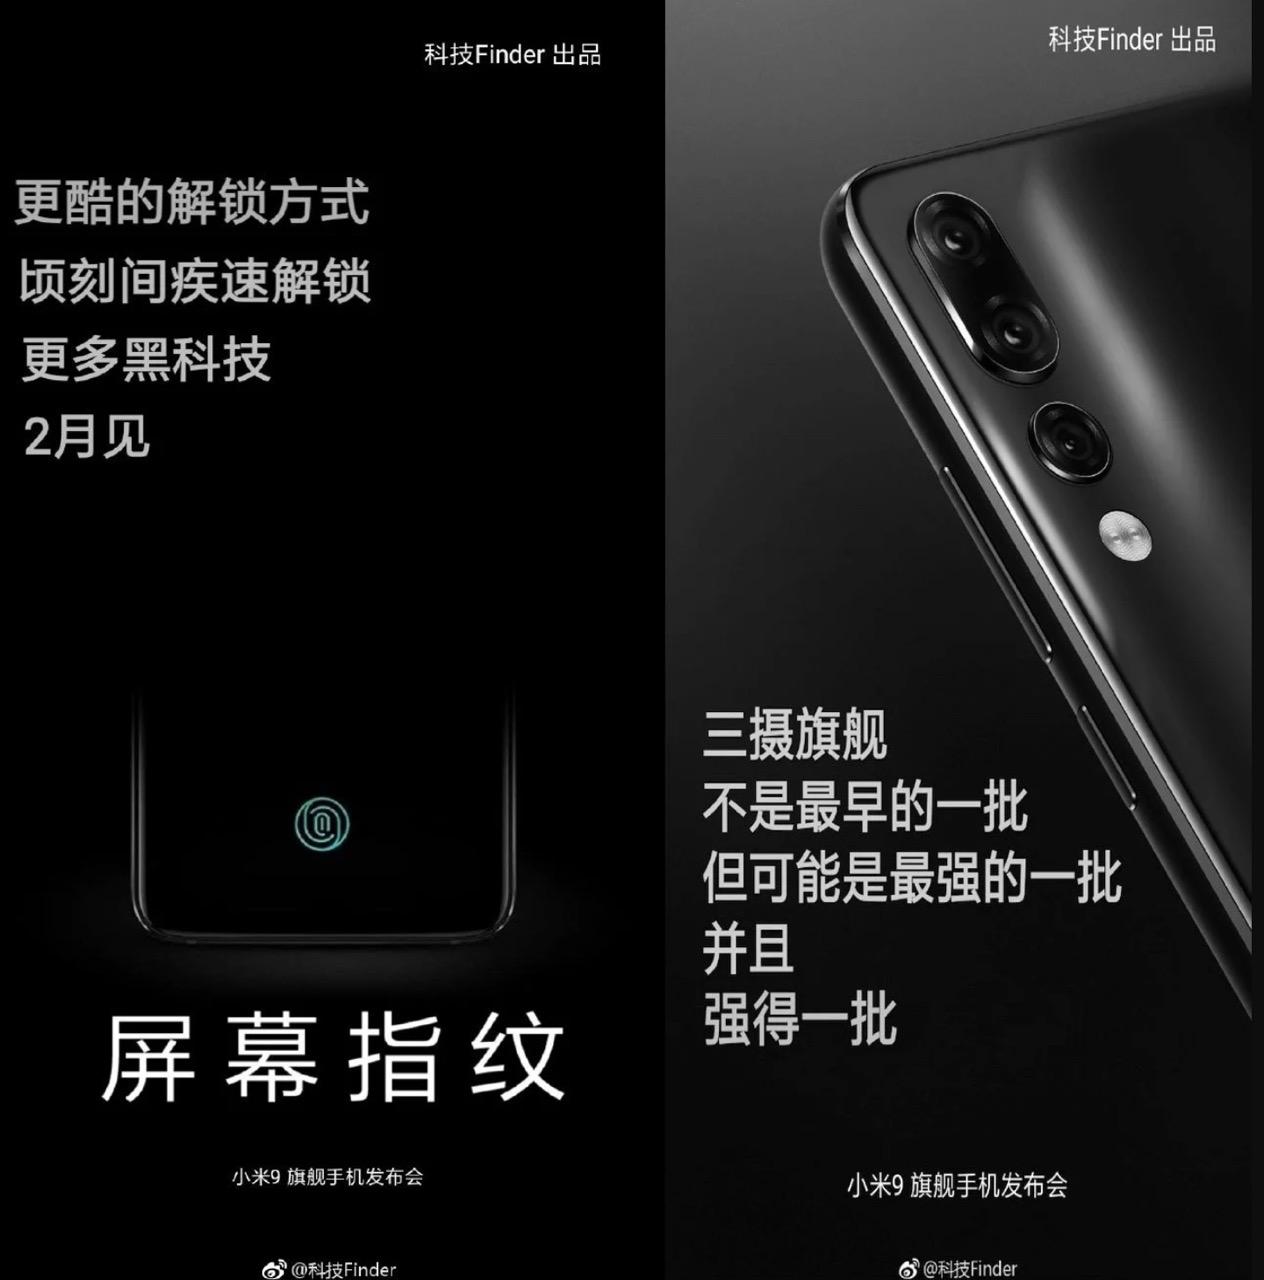 Xiaomi может принести Mi 9 в течение 2 февраля "width =" 1264 "height =" 1280